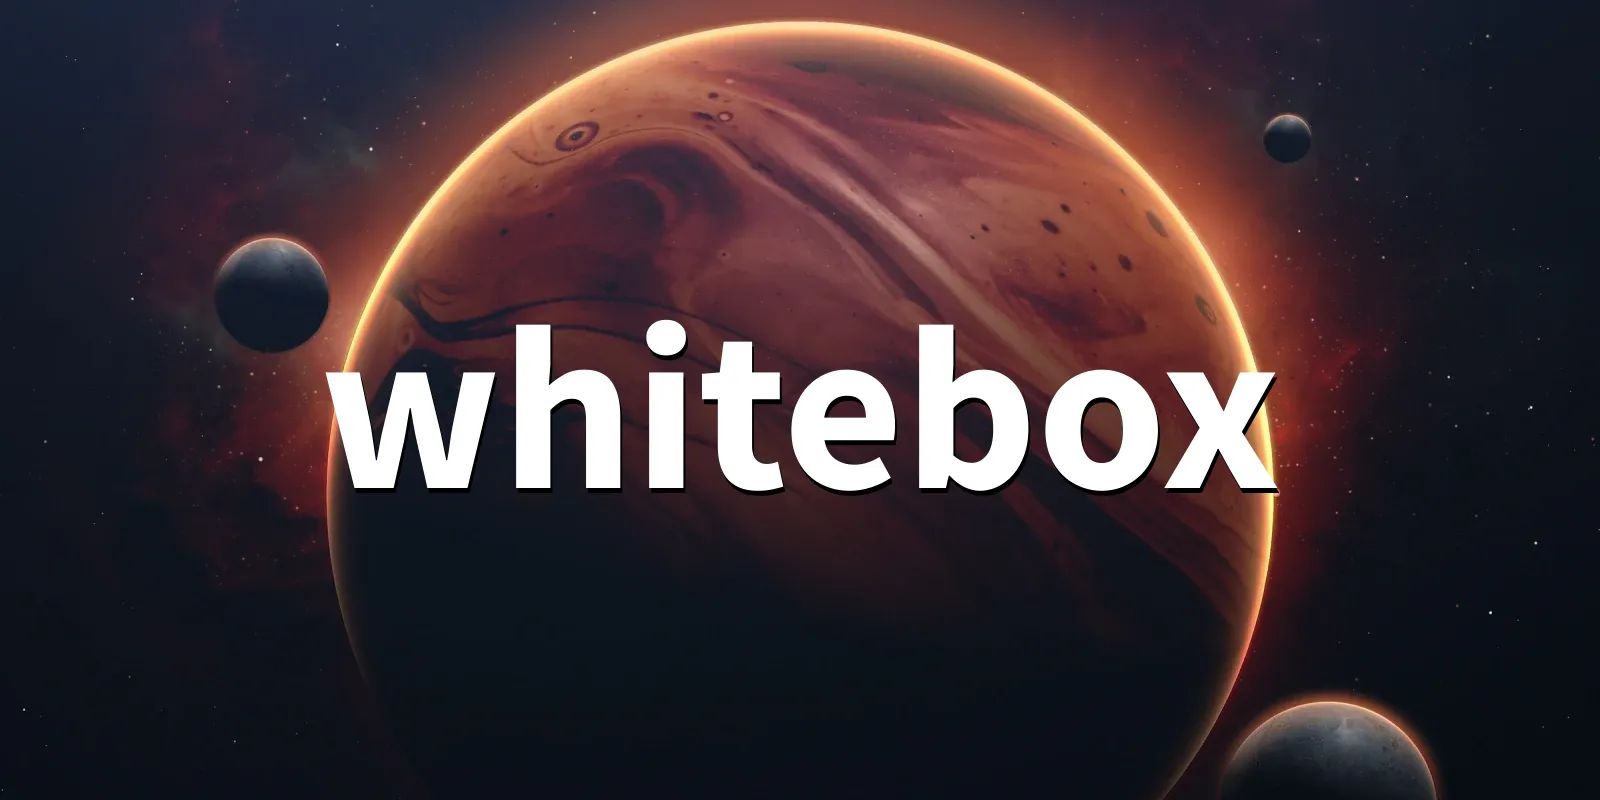 /pkg/w/whitebox/whitebox-banner.webp